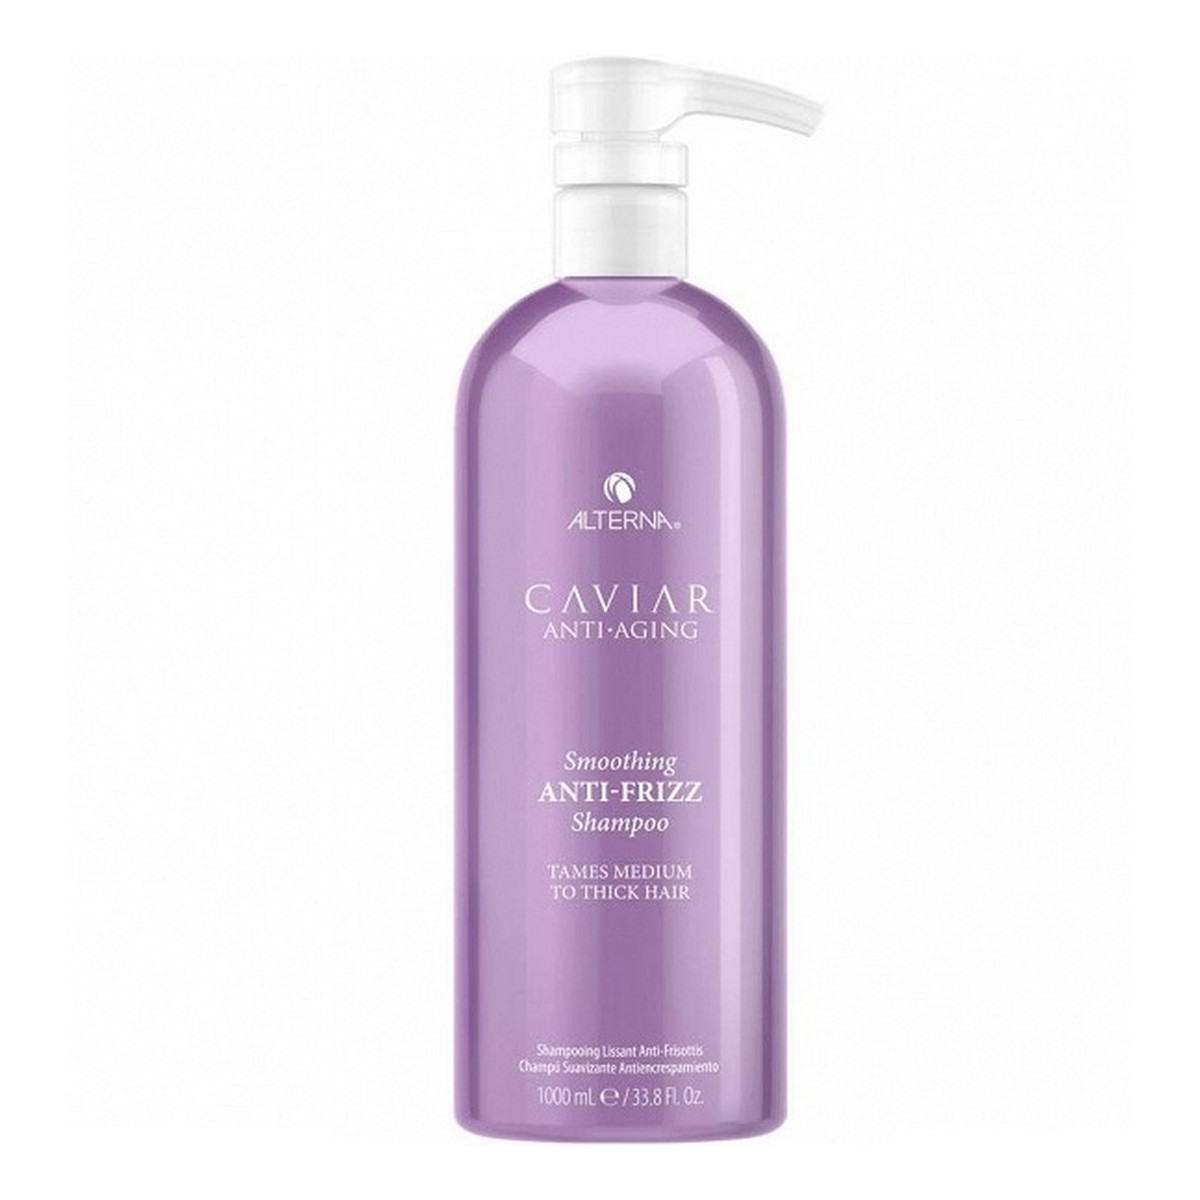 Alterna Caviar anti-aging smoothing anti-frizz shampoo szampon do włosów przeciw puszeniu się 1000ml